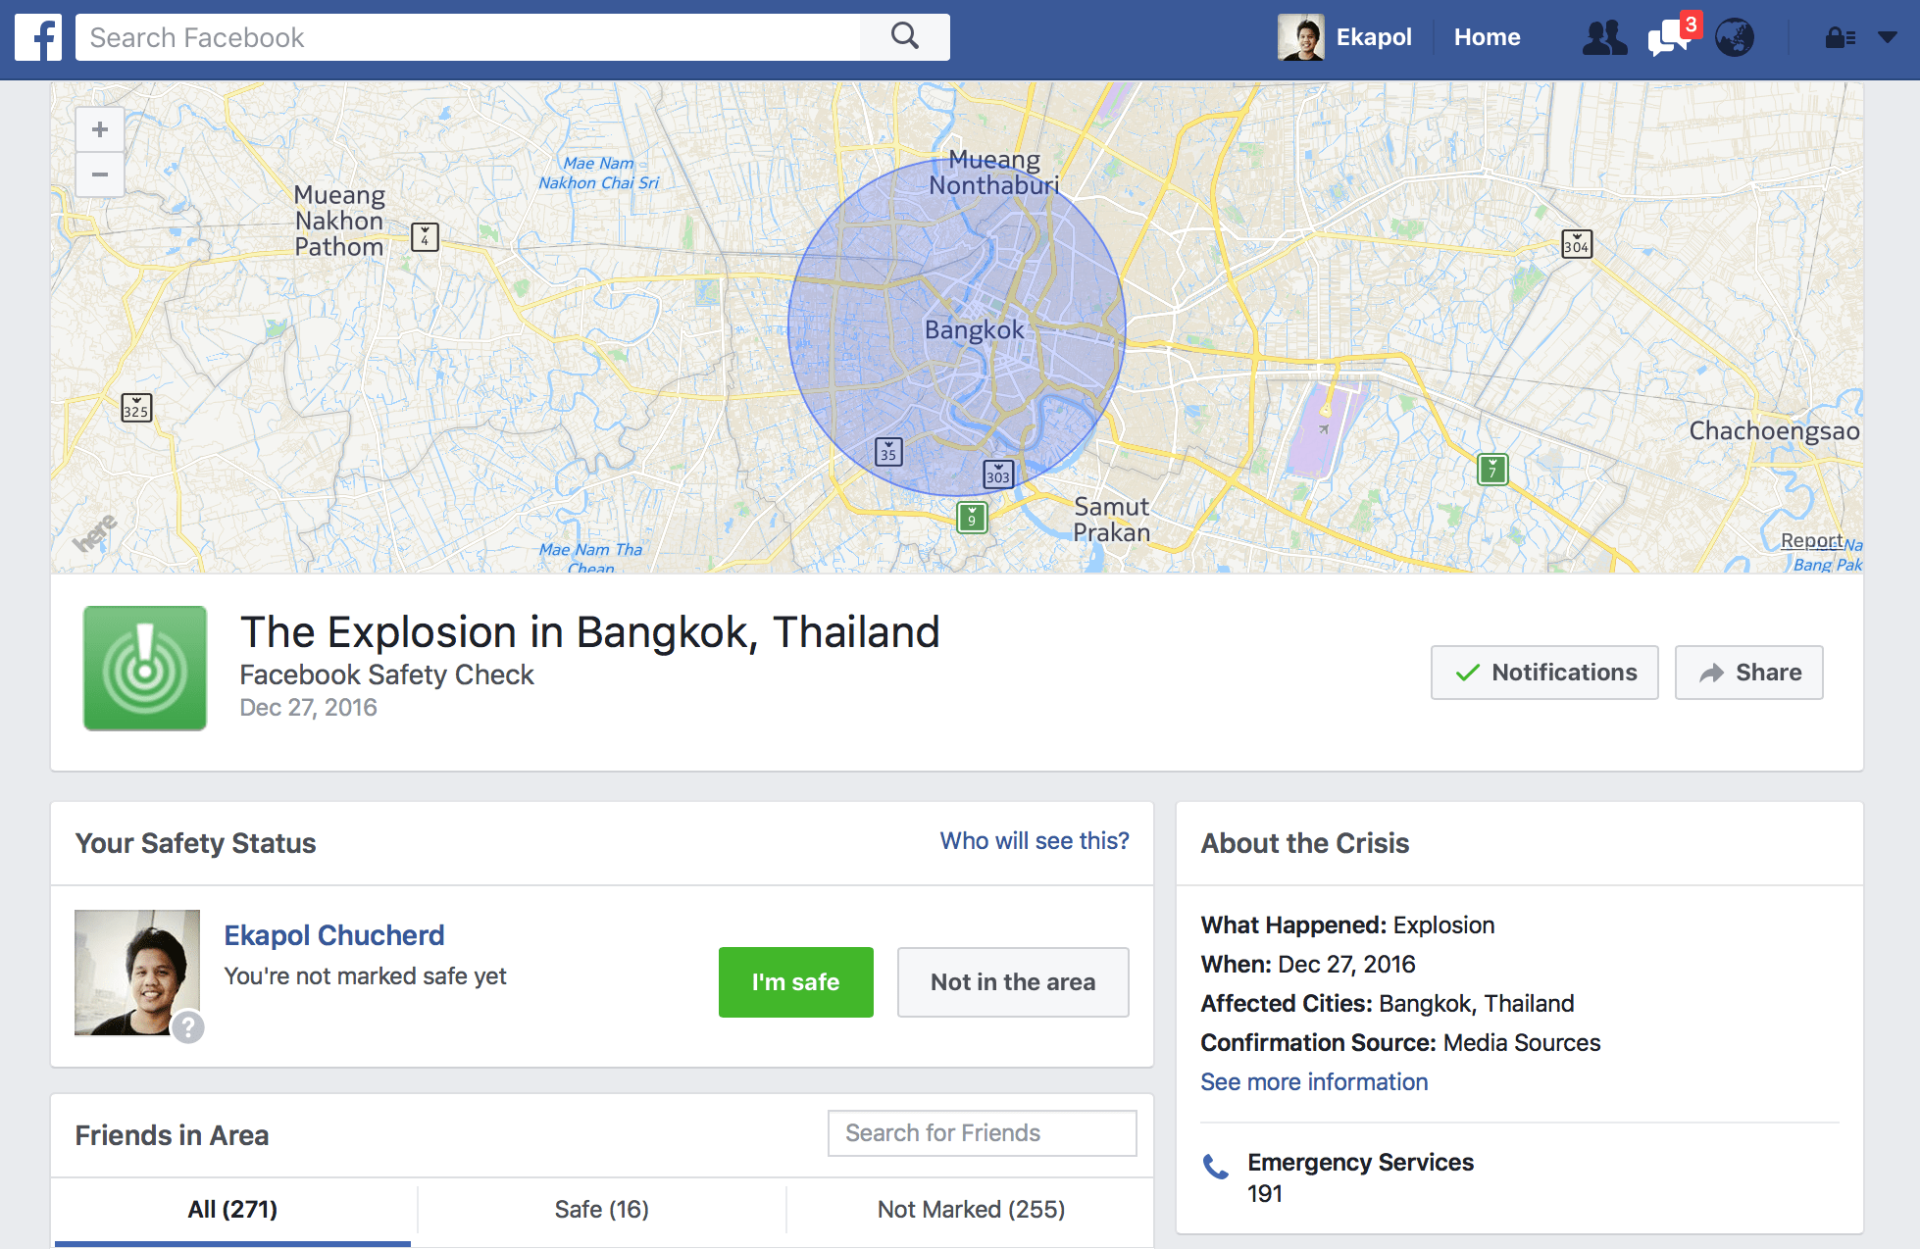 facebook ชี้แจง แจ้งเตือน Safety Check ในไทยถูกต้องแล้ว โดยอิงเหตุระเบิดปิงปองที่ทำเนียบ